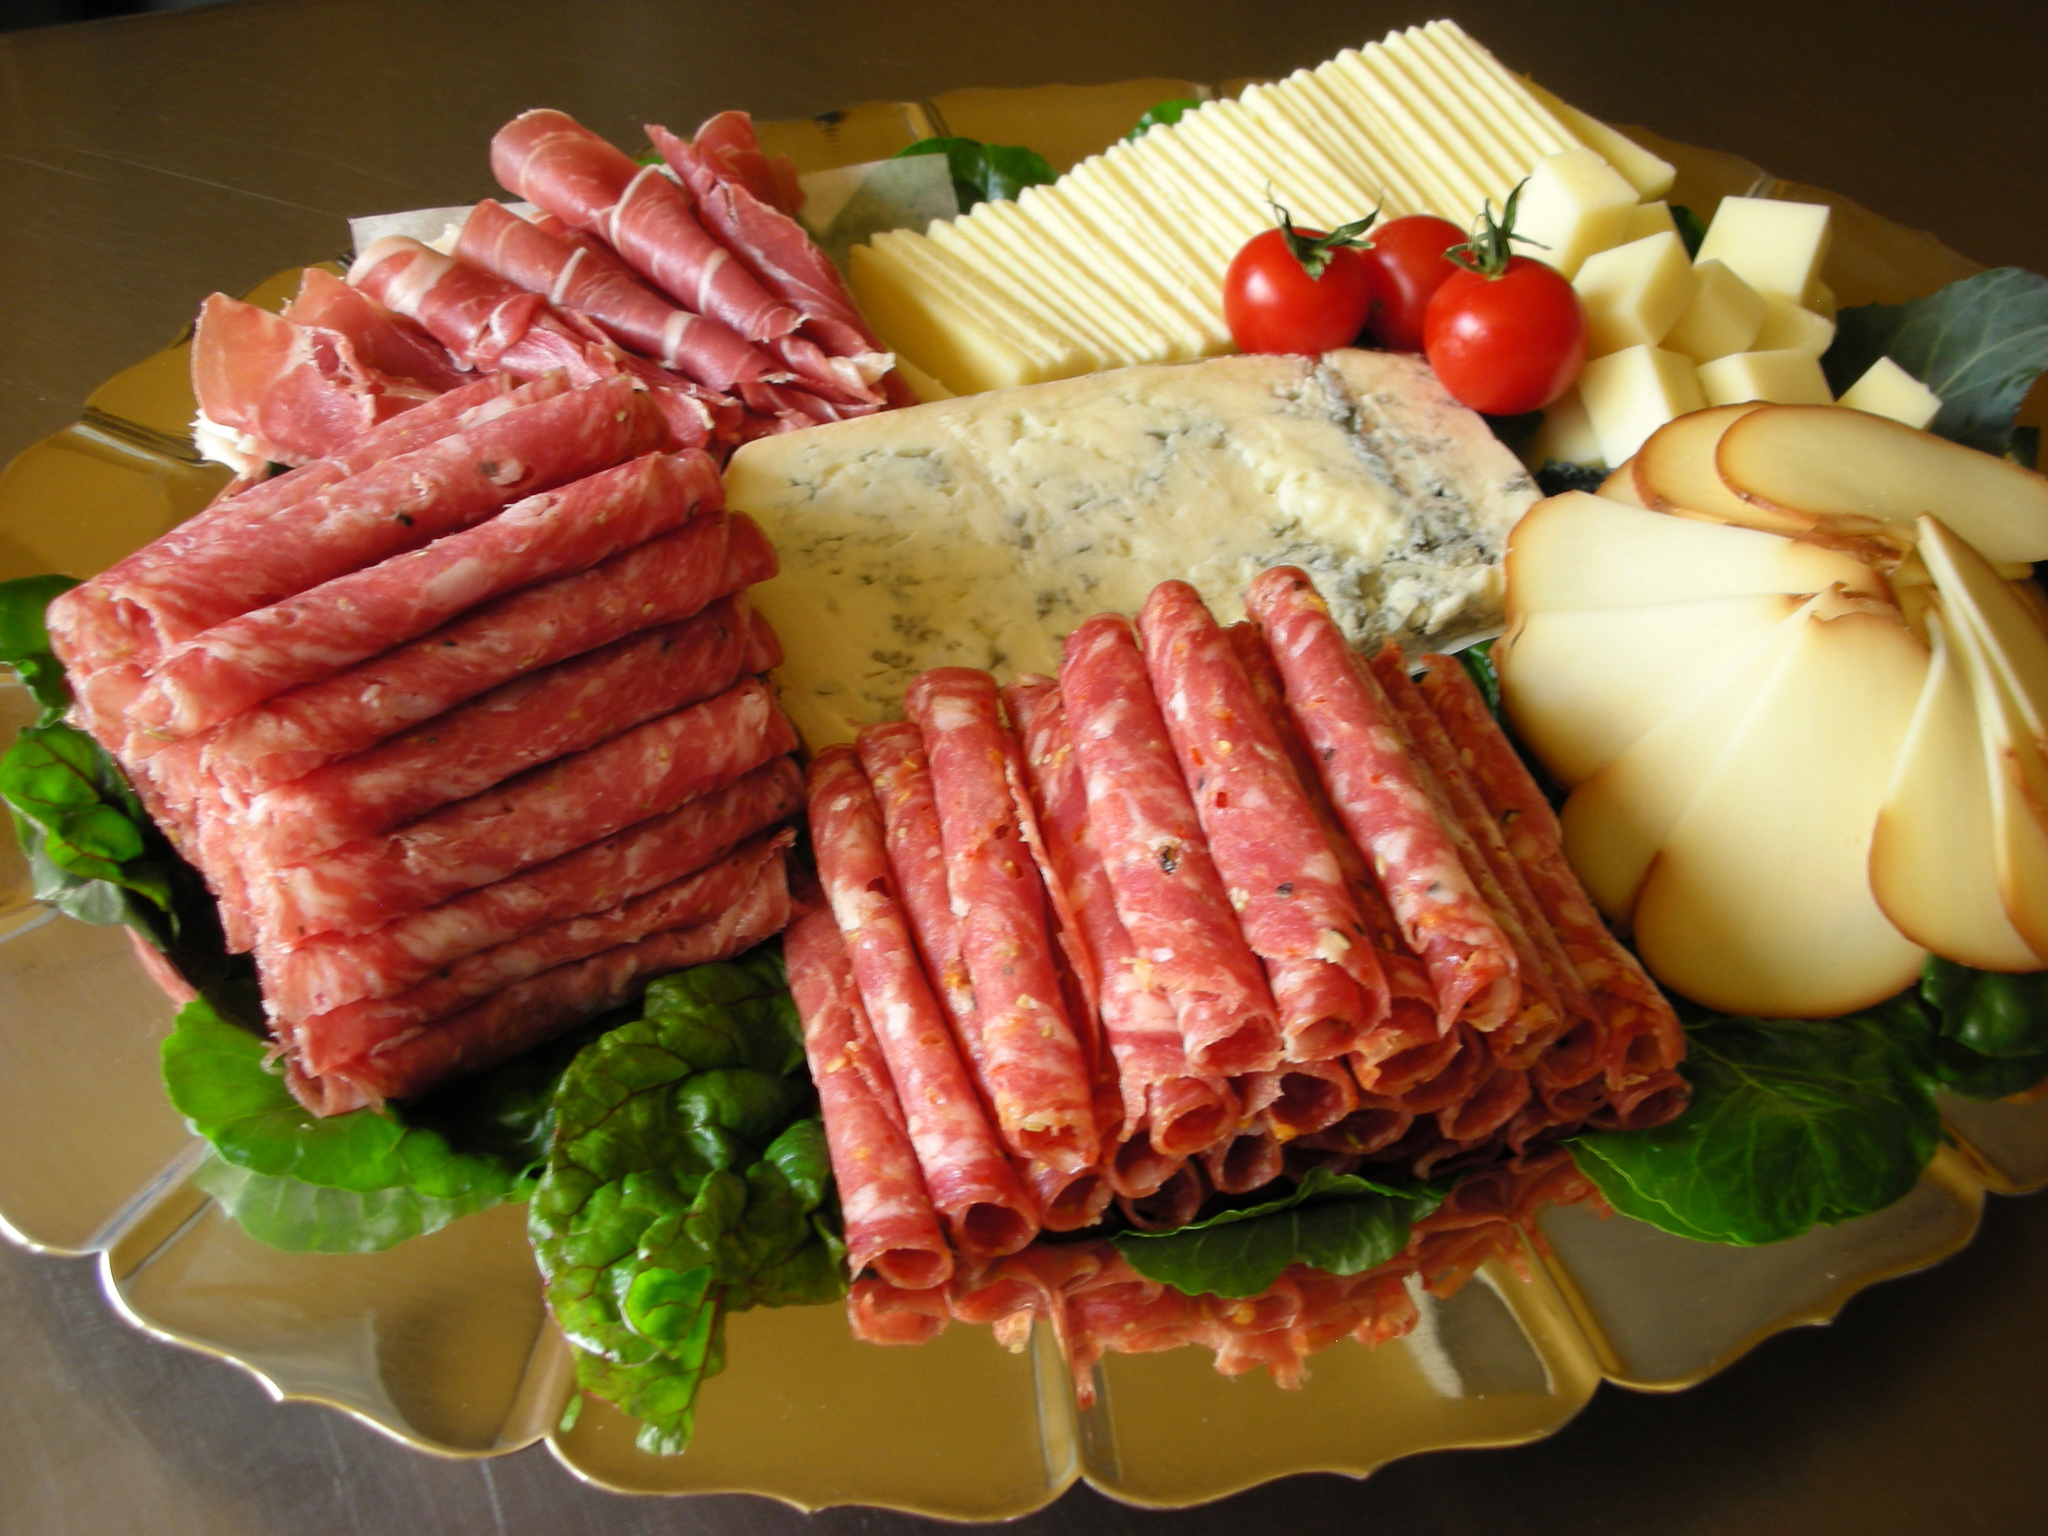 Нарезка из колбасы и сыра на праздничный стол фото